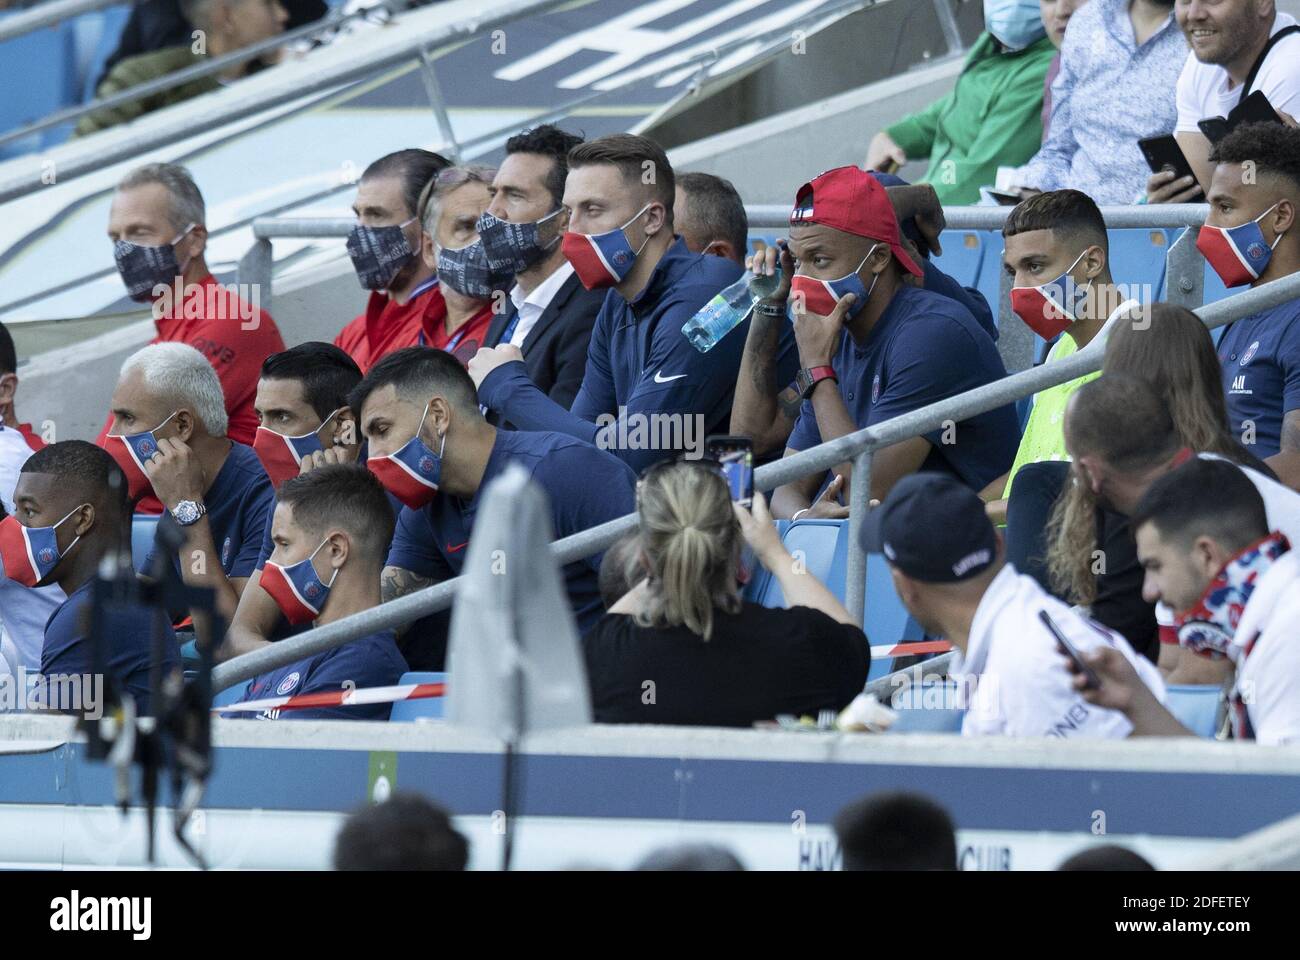 Ver: Kylian Mbappé, Le Havre x PSG em Direto